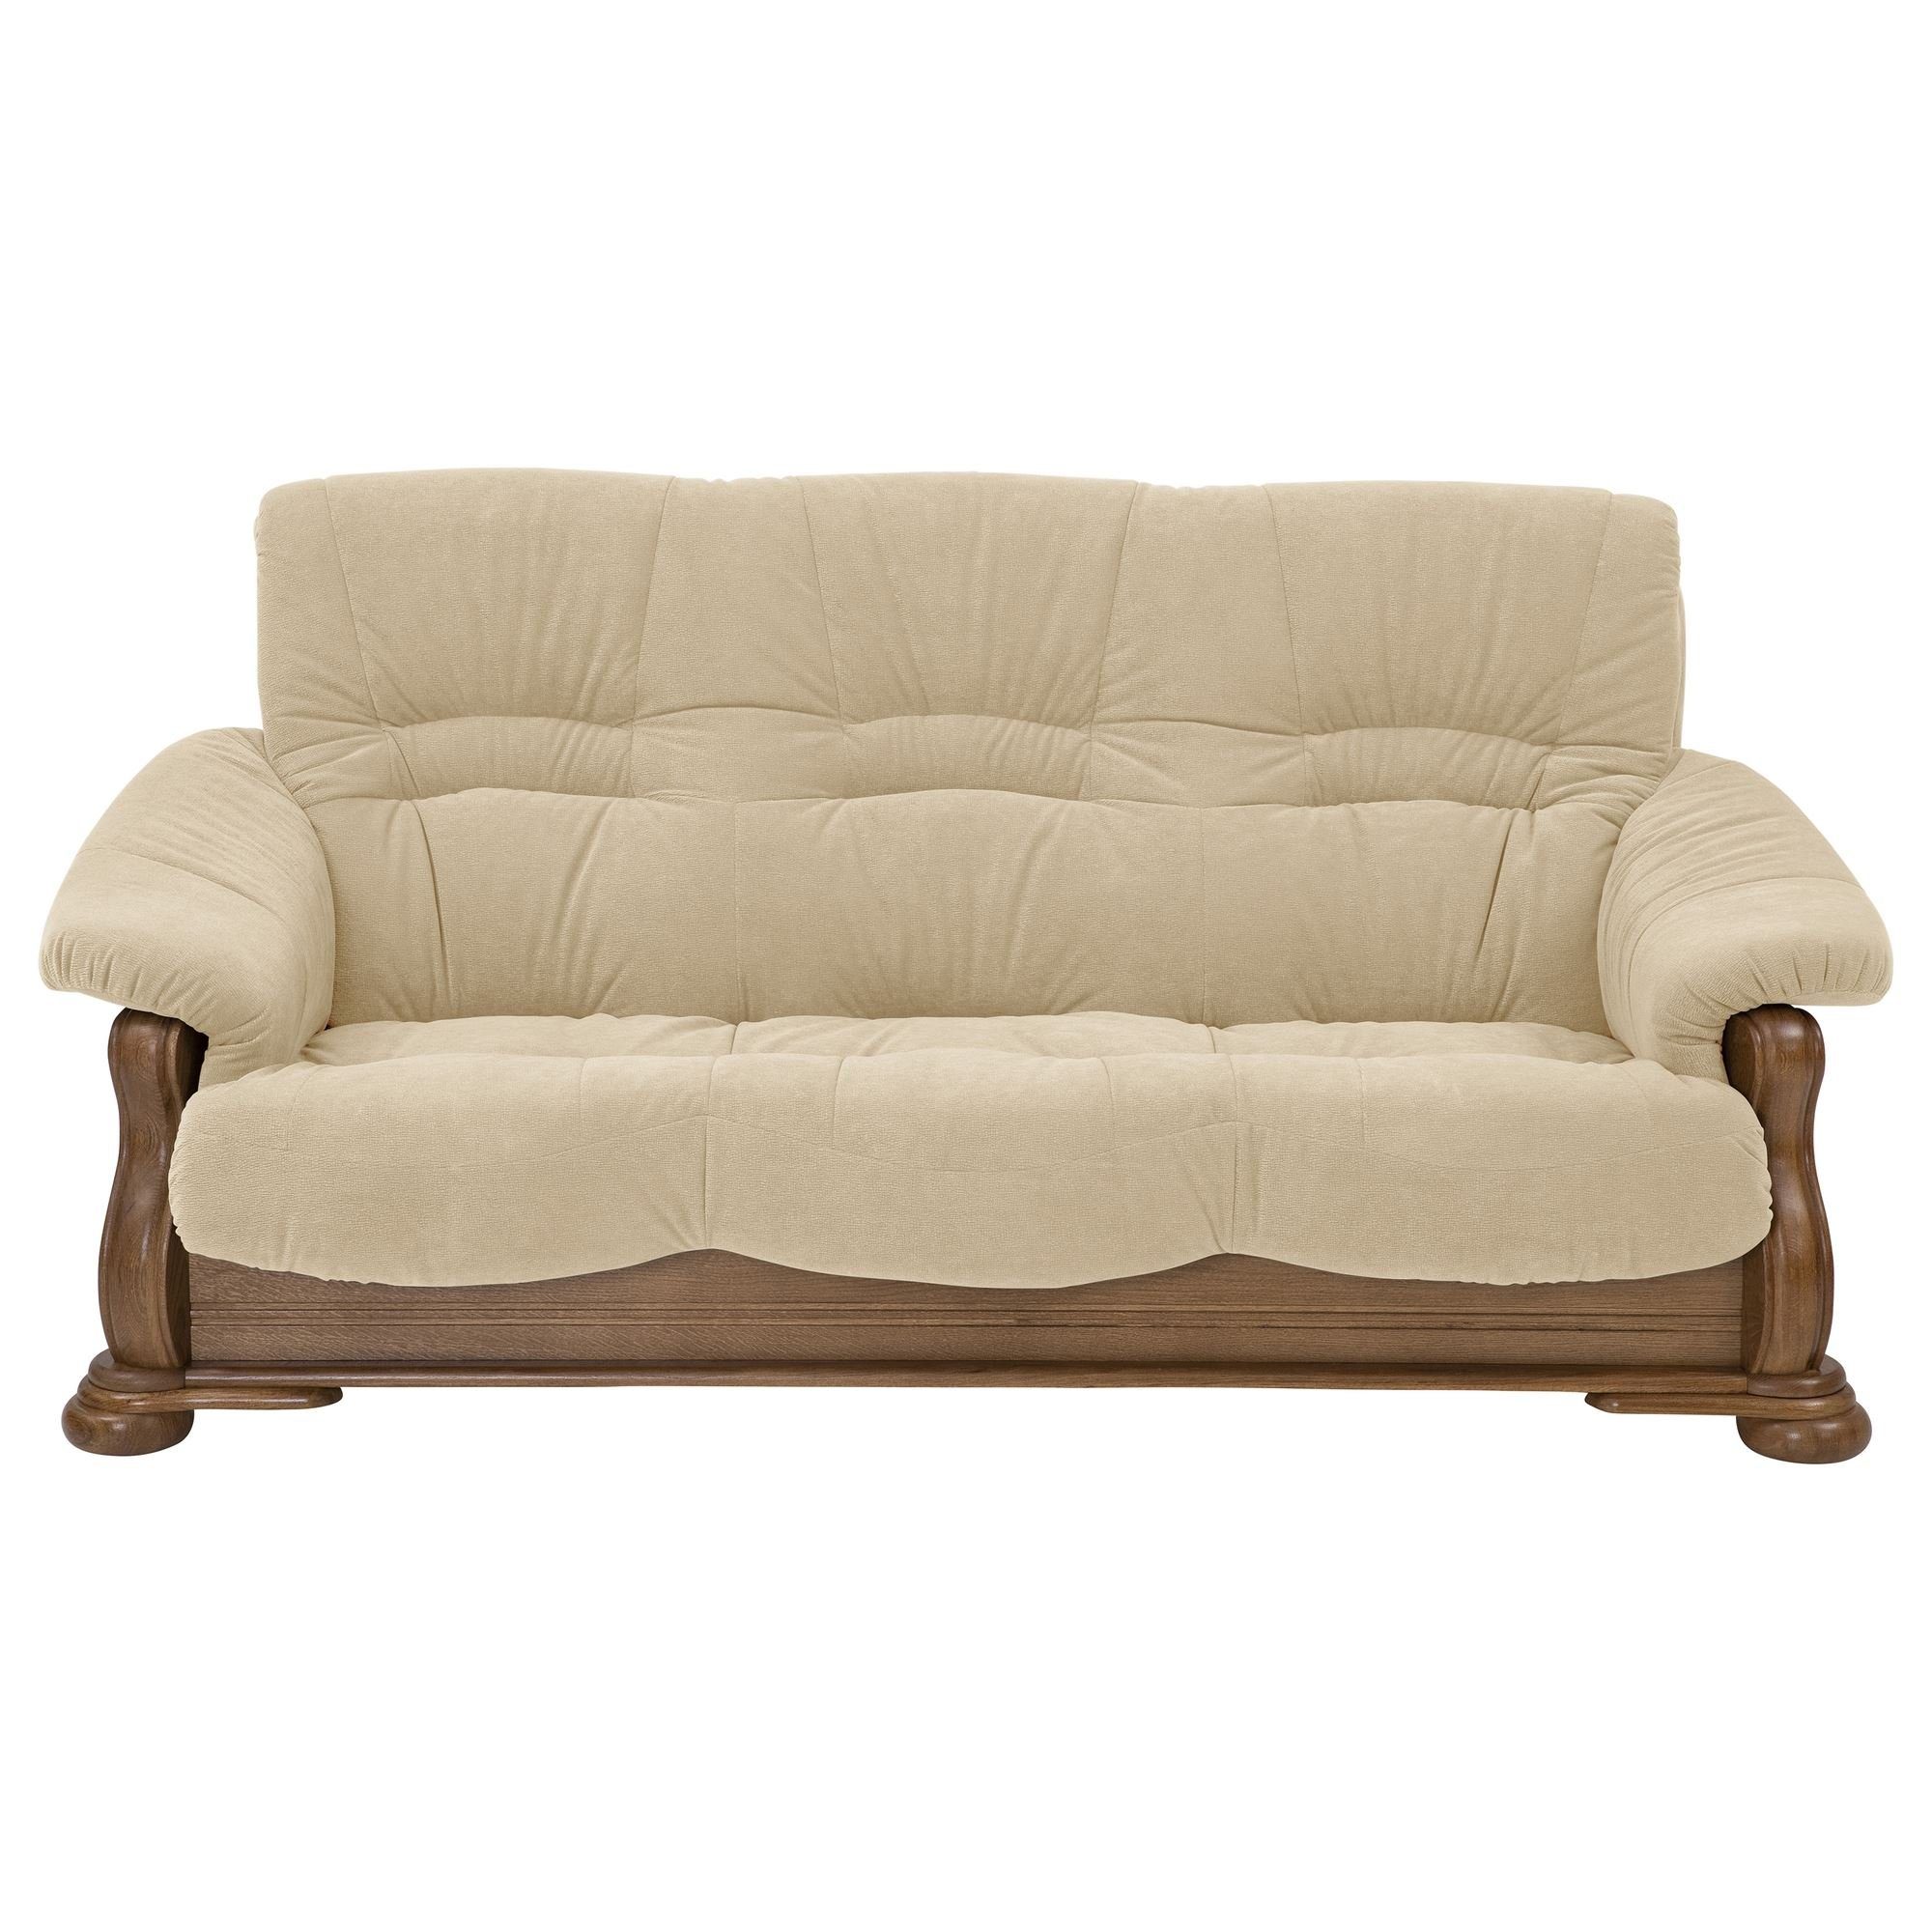 Katlin 3-Sitzer Kessel Eiche rustik, inkl. hochwertig verarbeitet,bequemer Sofa Versand Sparpreis 1 aufm Kostenlosem Flockstoff Sofa 58 Sitz Teile, Bezug